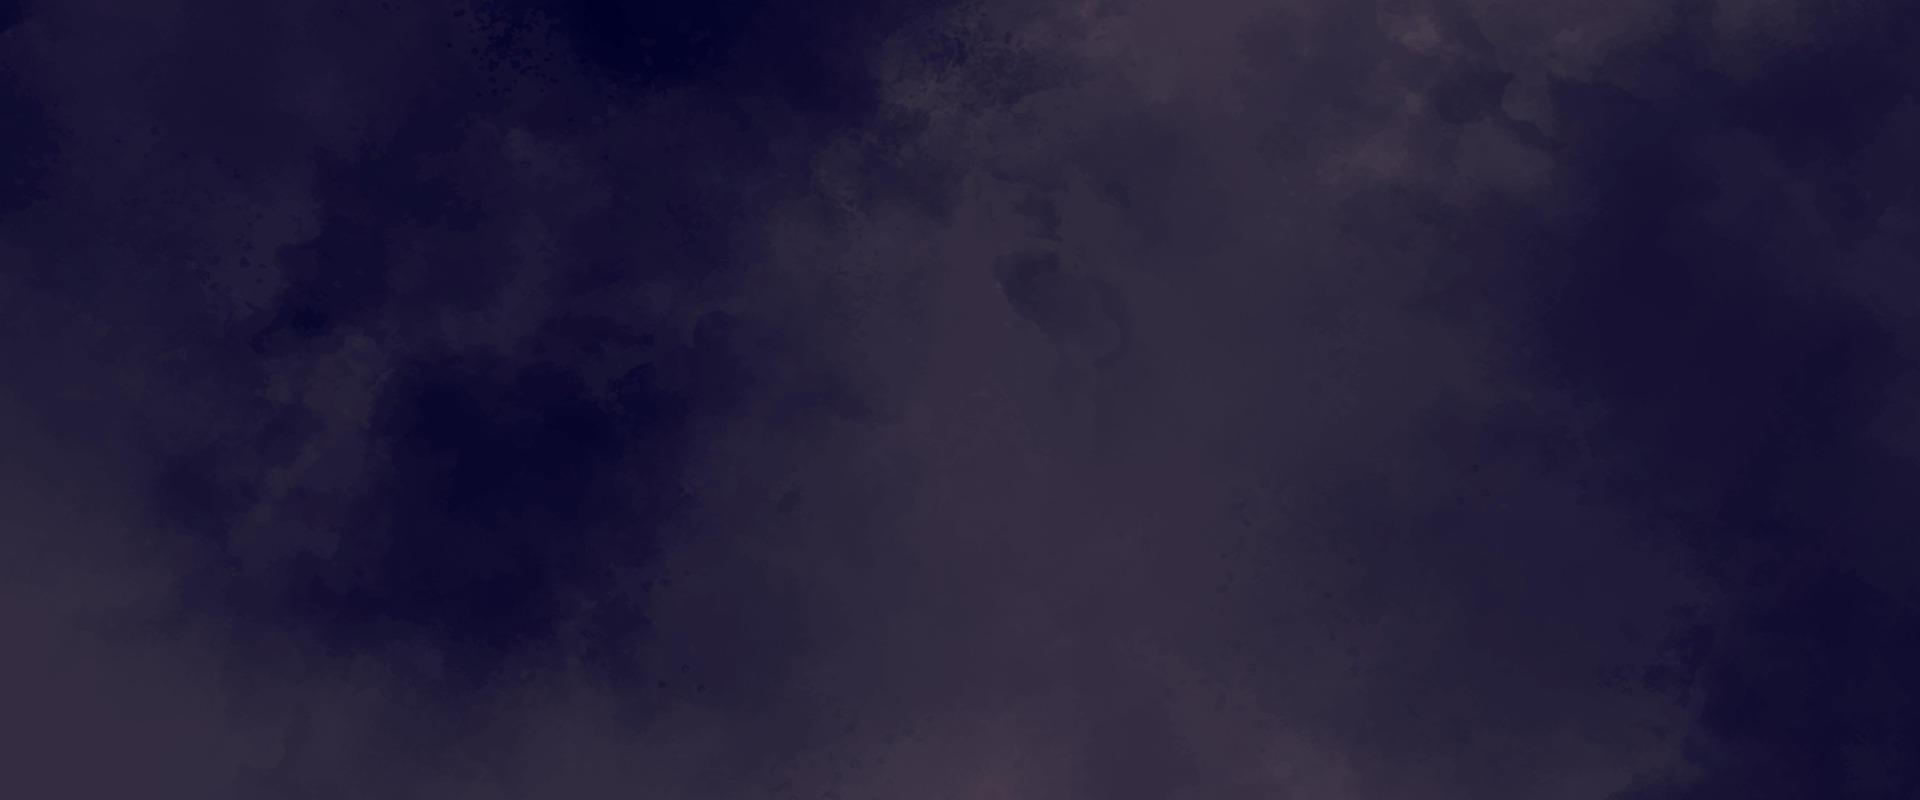 grunge aquarela roxo escuro abstrato. pintura de fundo roxo aquarela na textura de papel. lindo padrão de textura de papel grunge para design vintage. aquarela de brilho de cor rosa pastel suave vetor